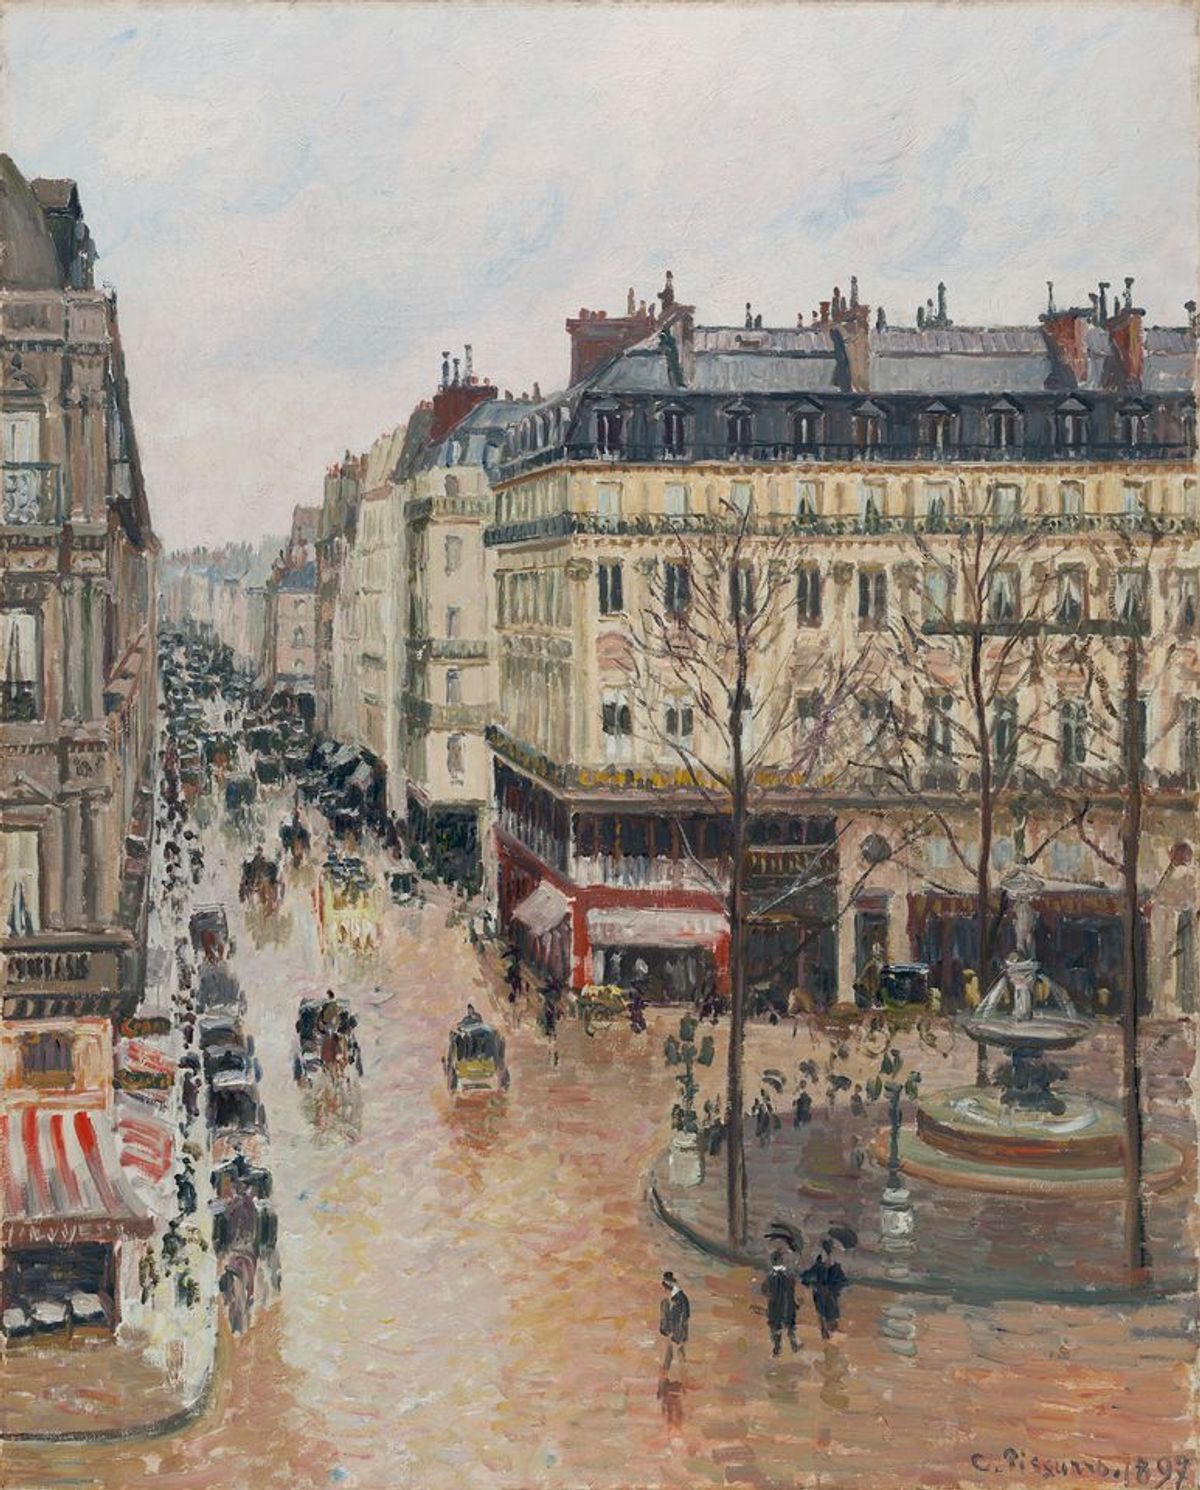 Camille Pissarro's Rue St. Honoré, Après Midi, Effet de Pluie (1897) Thyssen-Bornemisza Museo Nacional